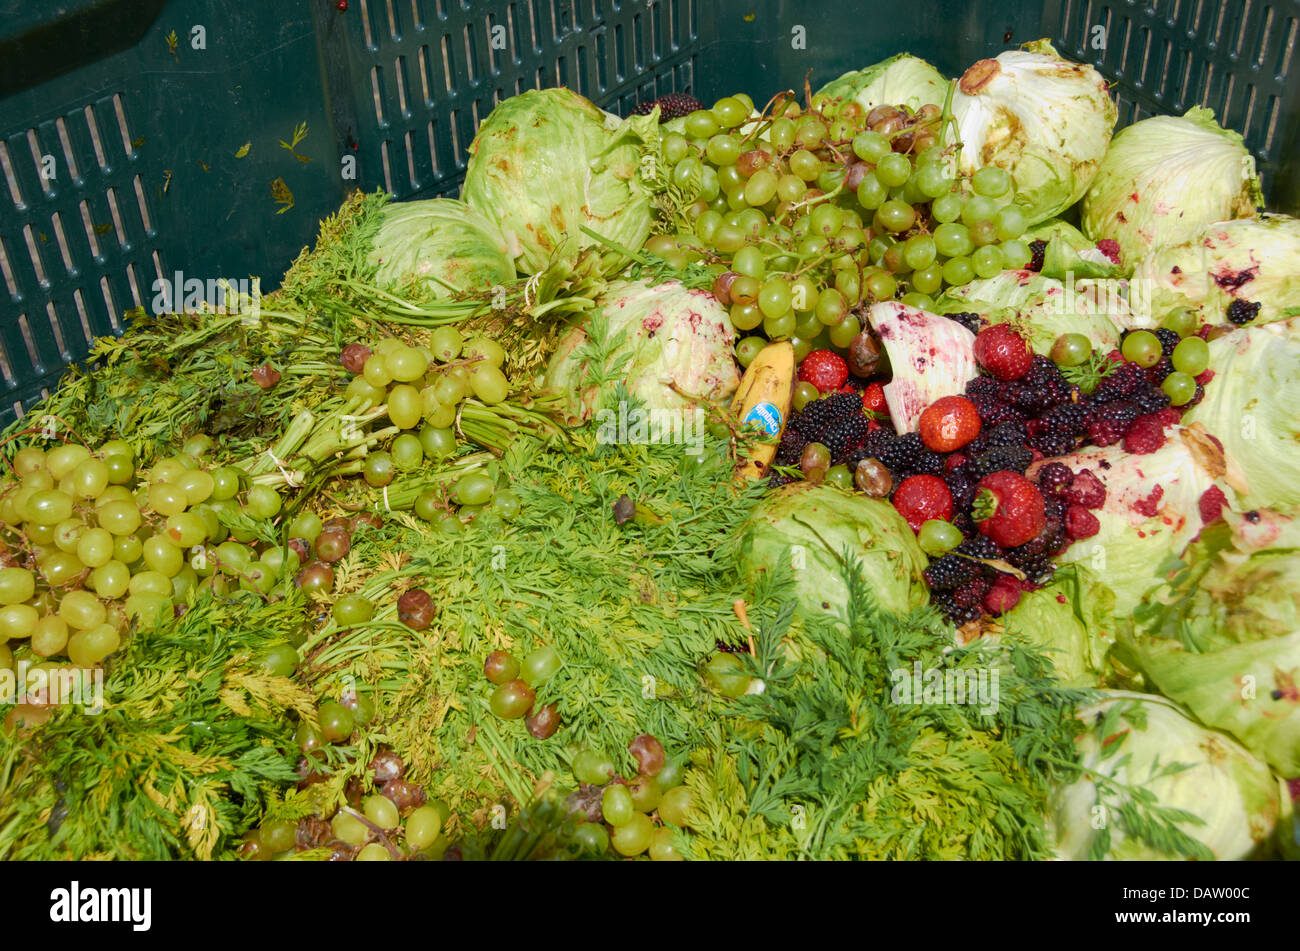 Les déchets alimentaires des fruits et légumes Banque D'Images